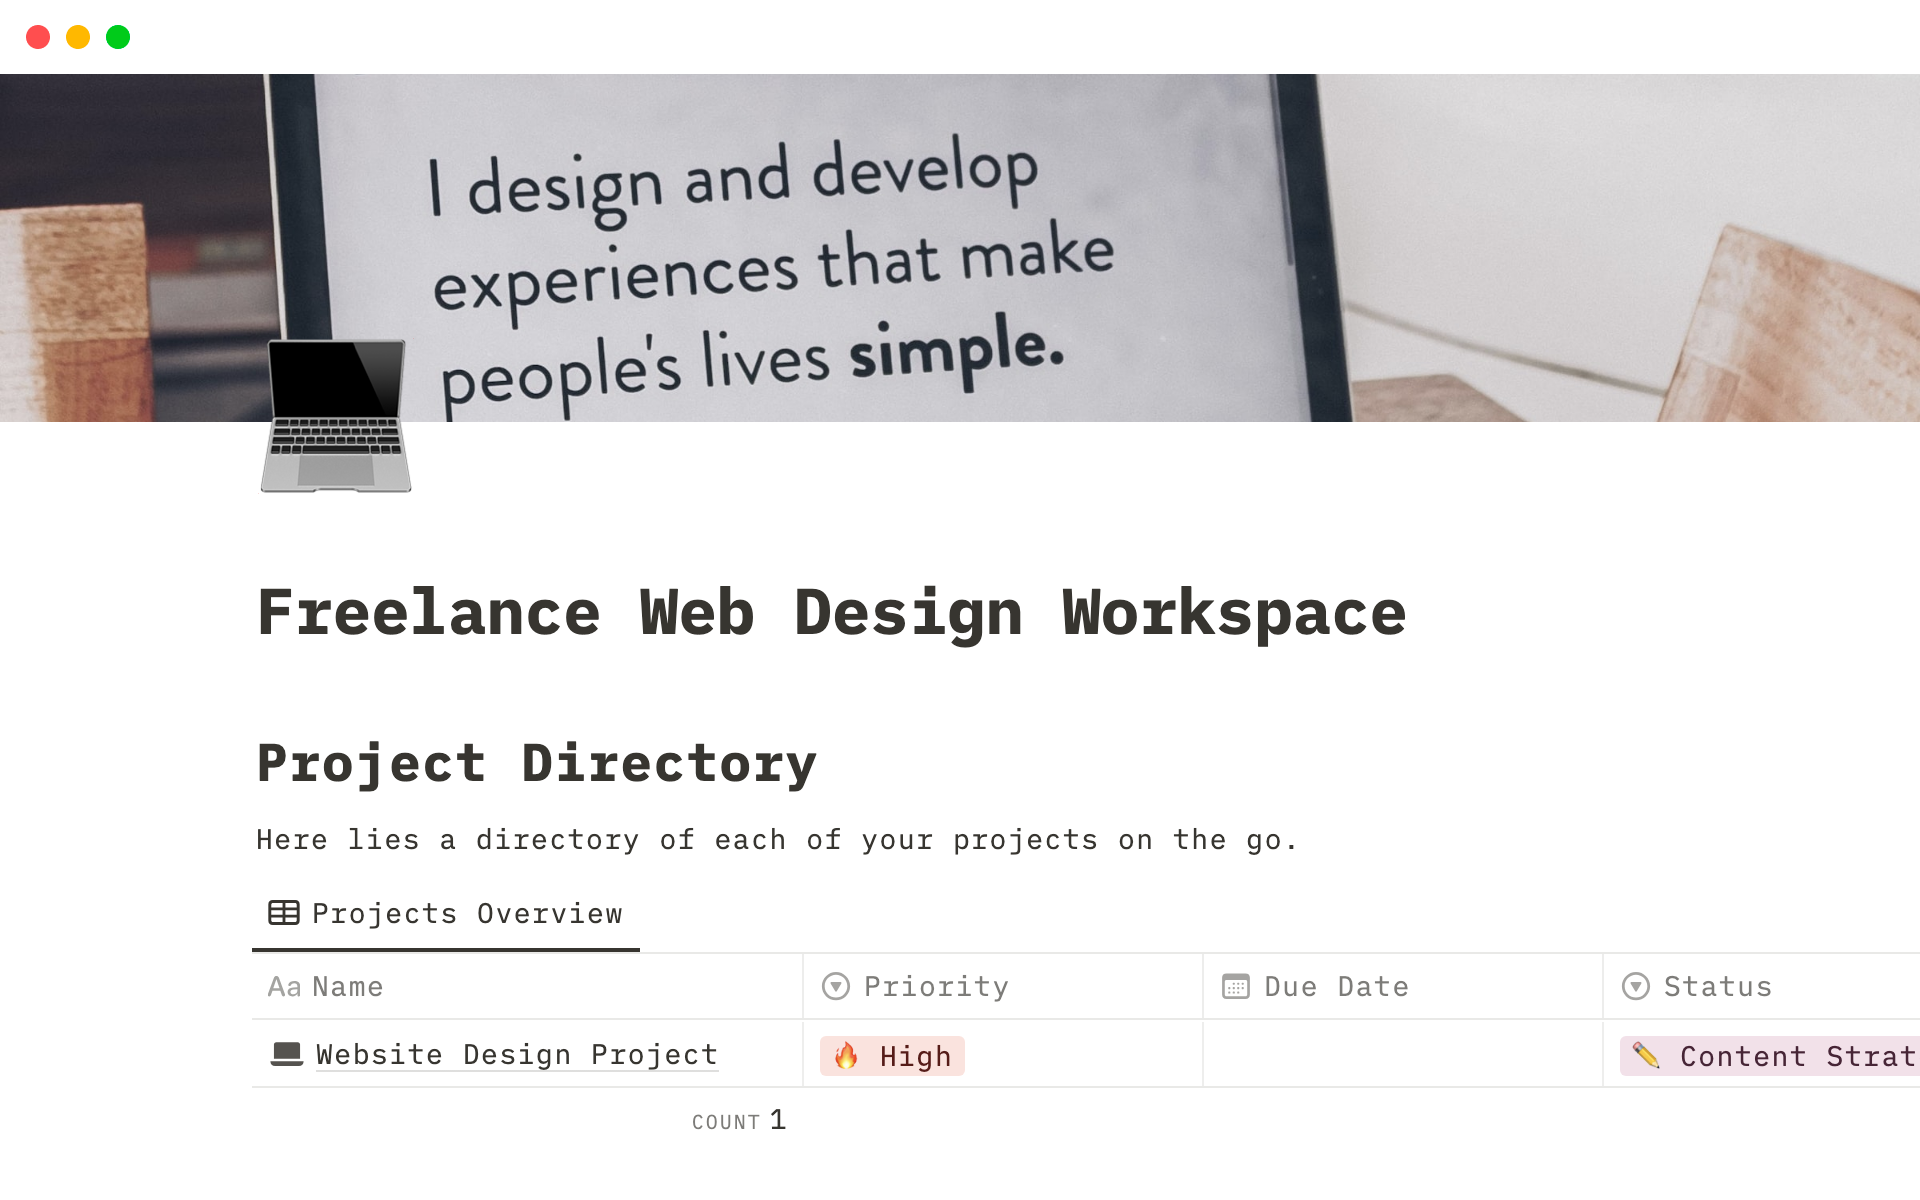 Vista previa de una plantilla para Freelance Web Design Workspace